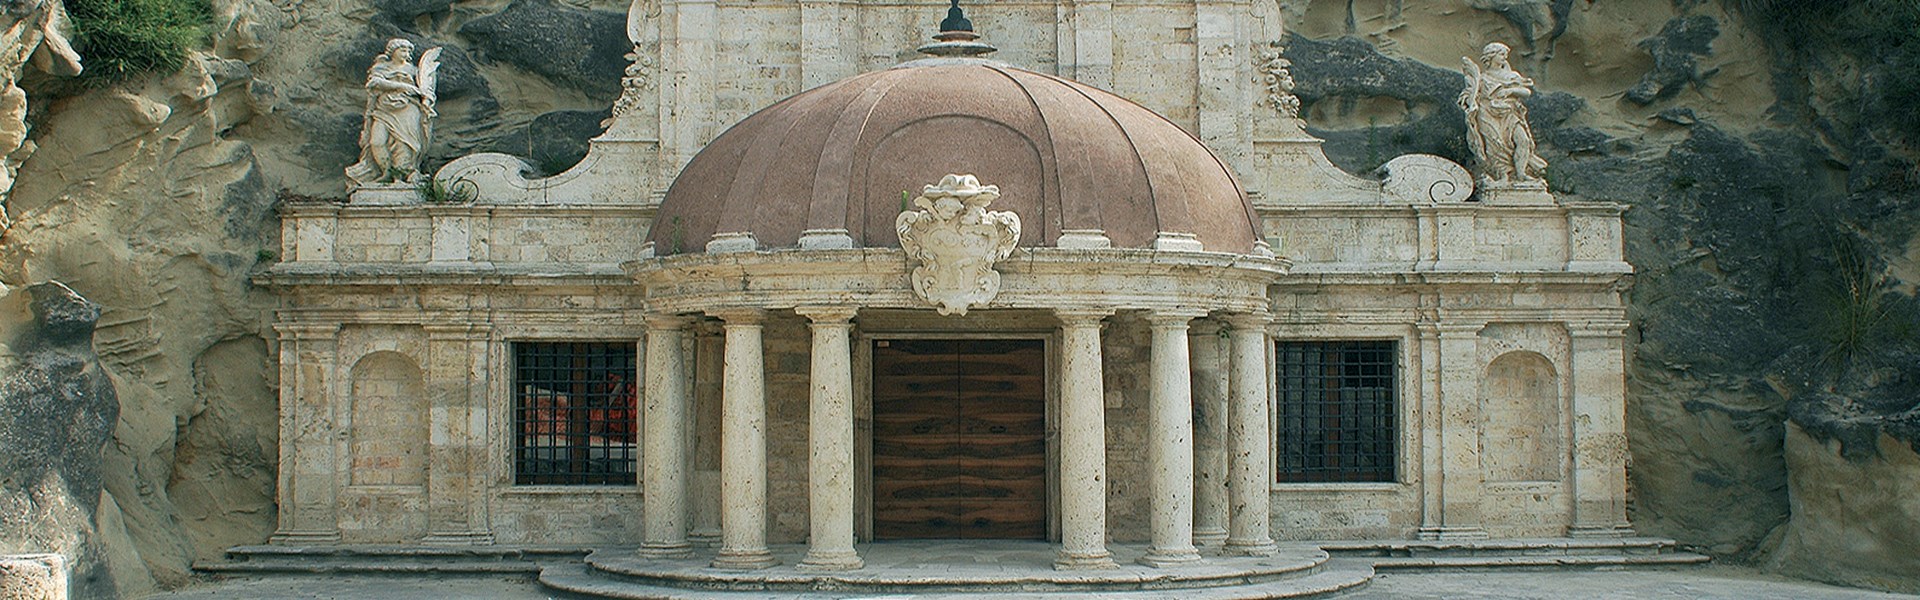 Ascoli Piceno - Tempietto Santuario di S.Emidio alle Grotte